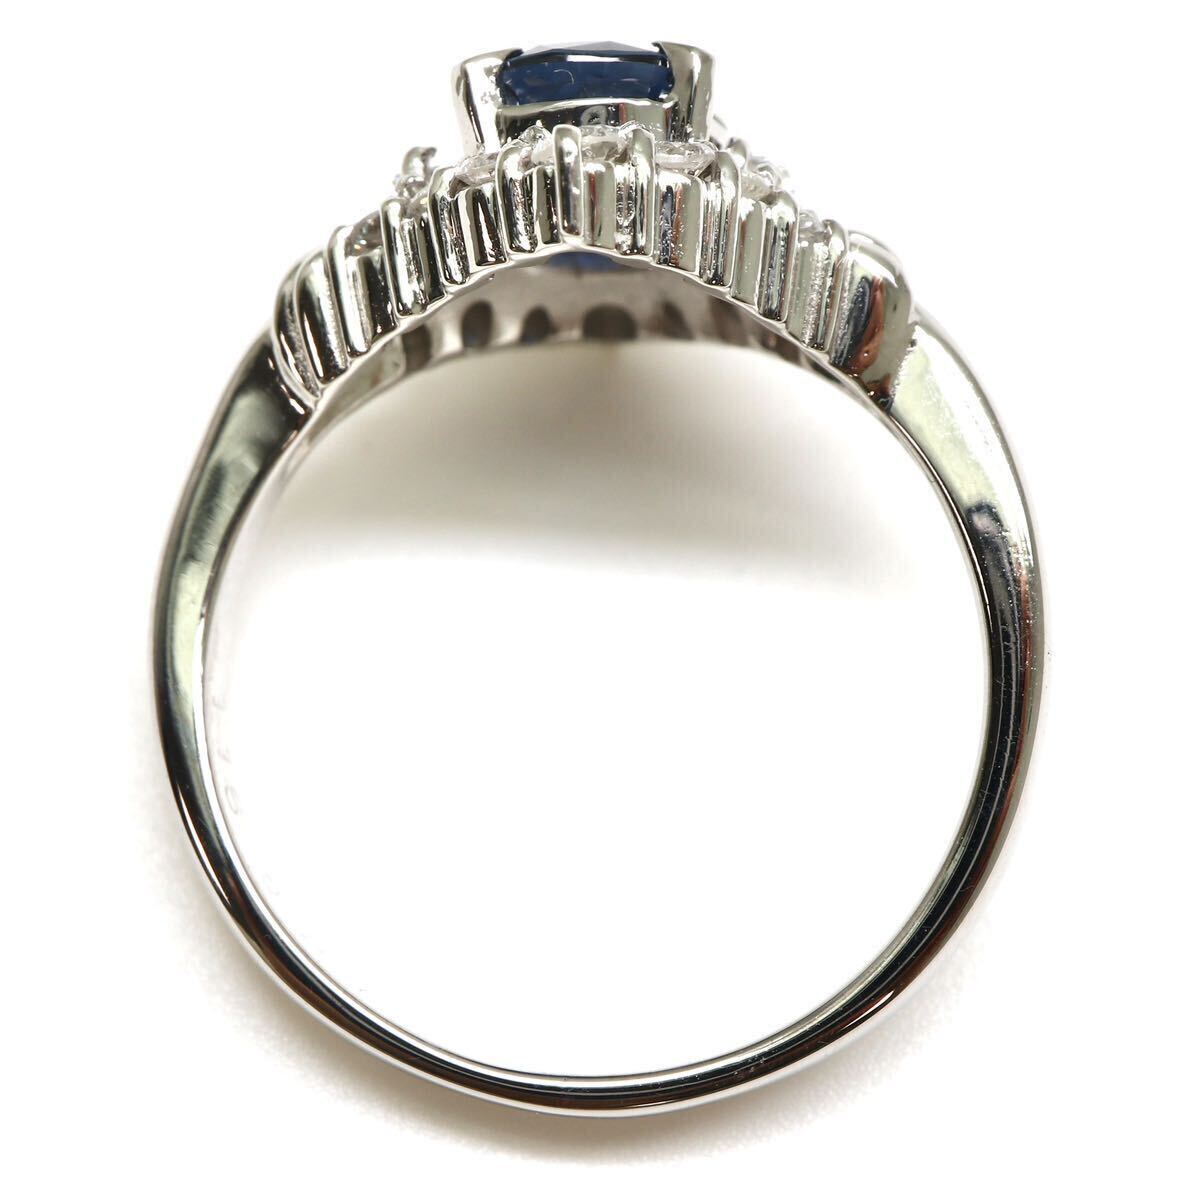 豪華!!ソーティング付!!◆Pt900 天然ダイヤモンド/天然サファイアリング◆A 約6.0g 約13号 diamond sapphire ジュエリー ring 指輪 EC9/EC9の画像5